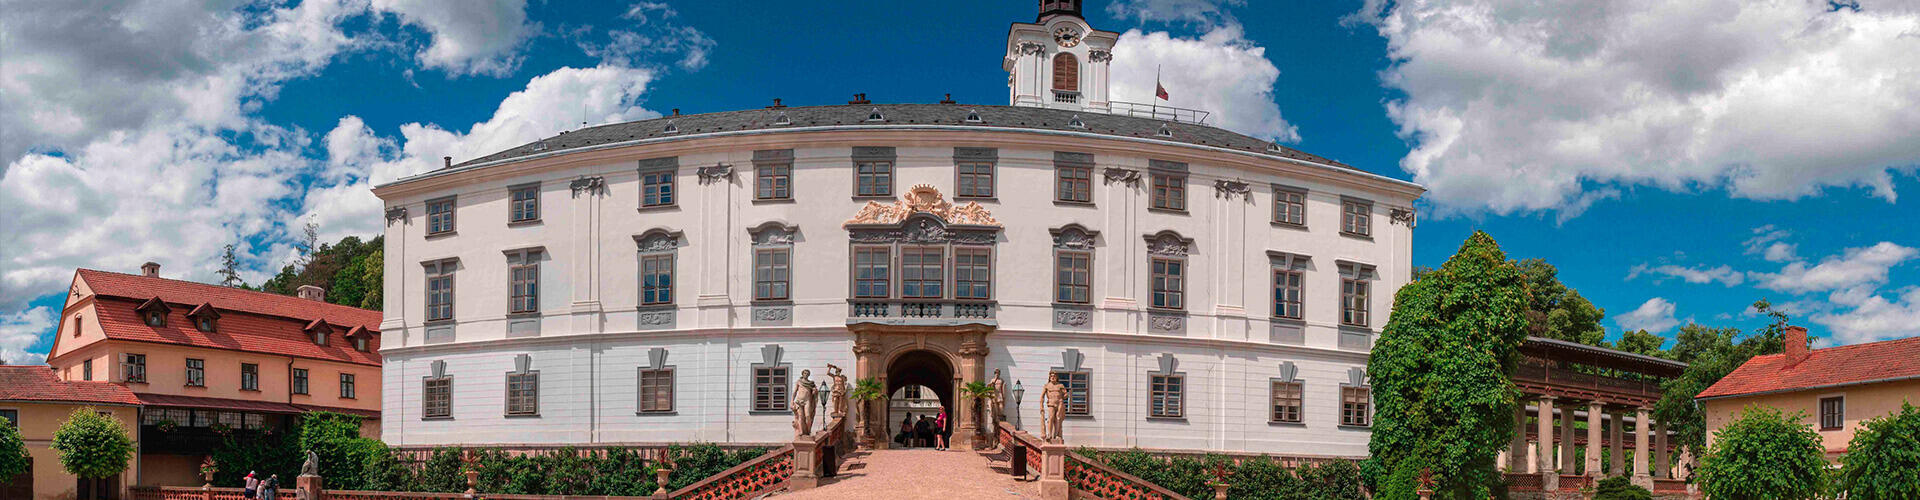 Státní zámek Lysice, Barokní zámek, magazín Kult* Brno